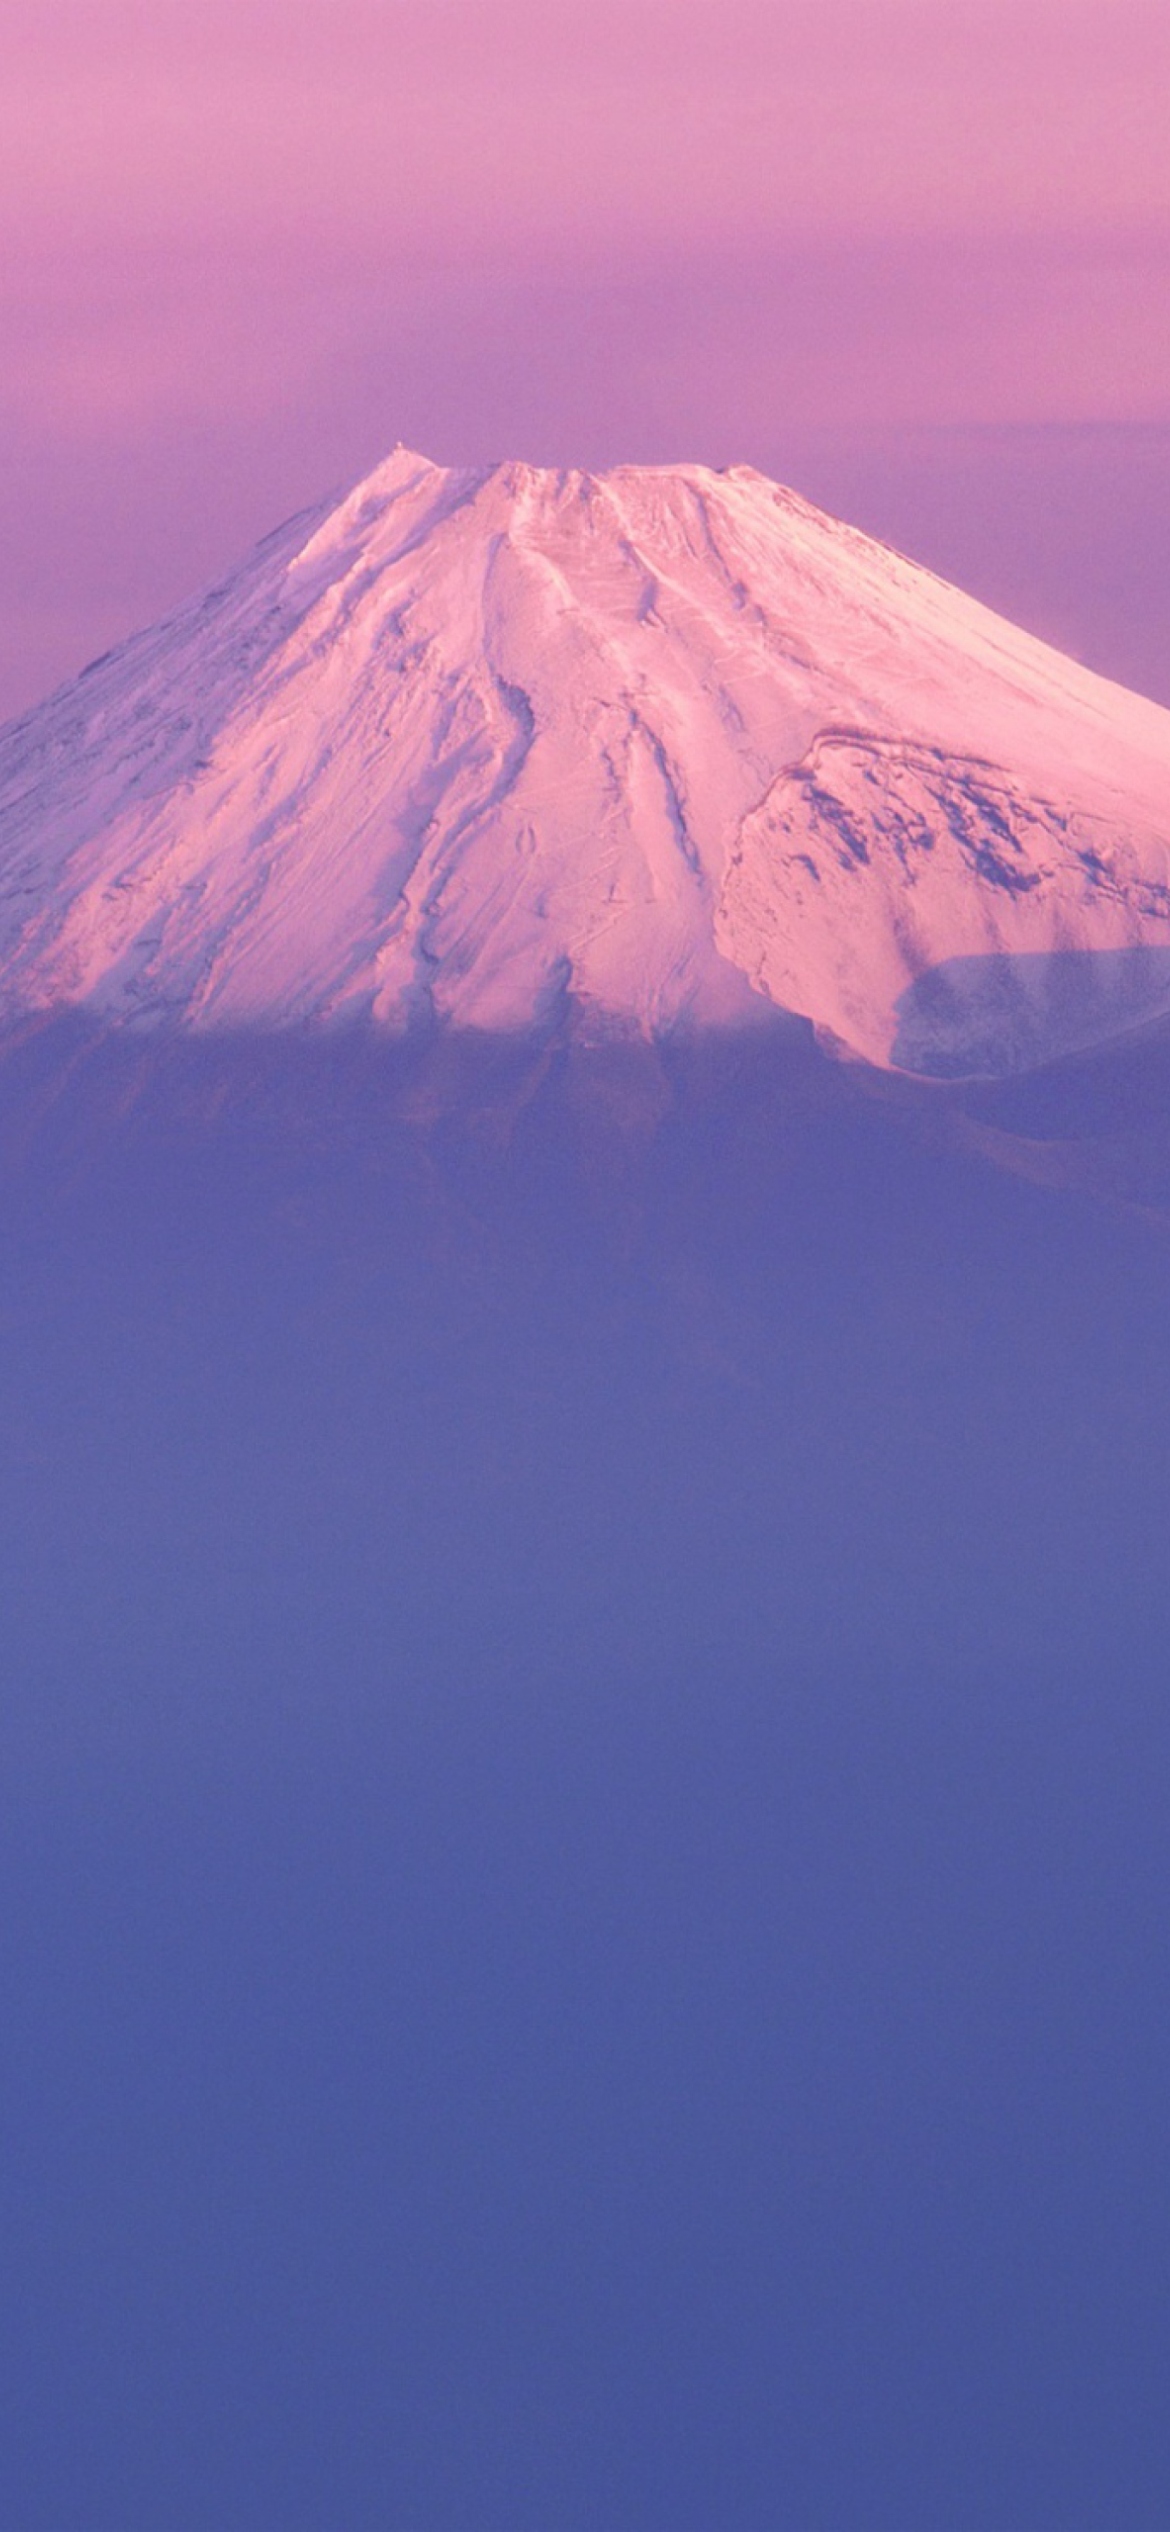 Mountain Fuji wallpaper 1170x2532